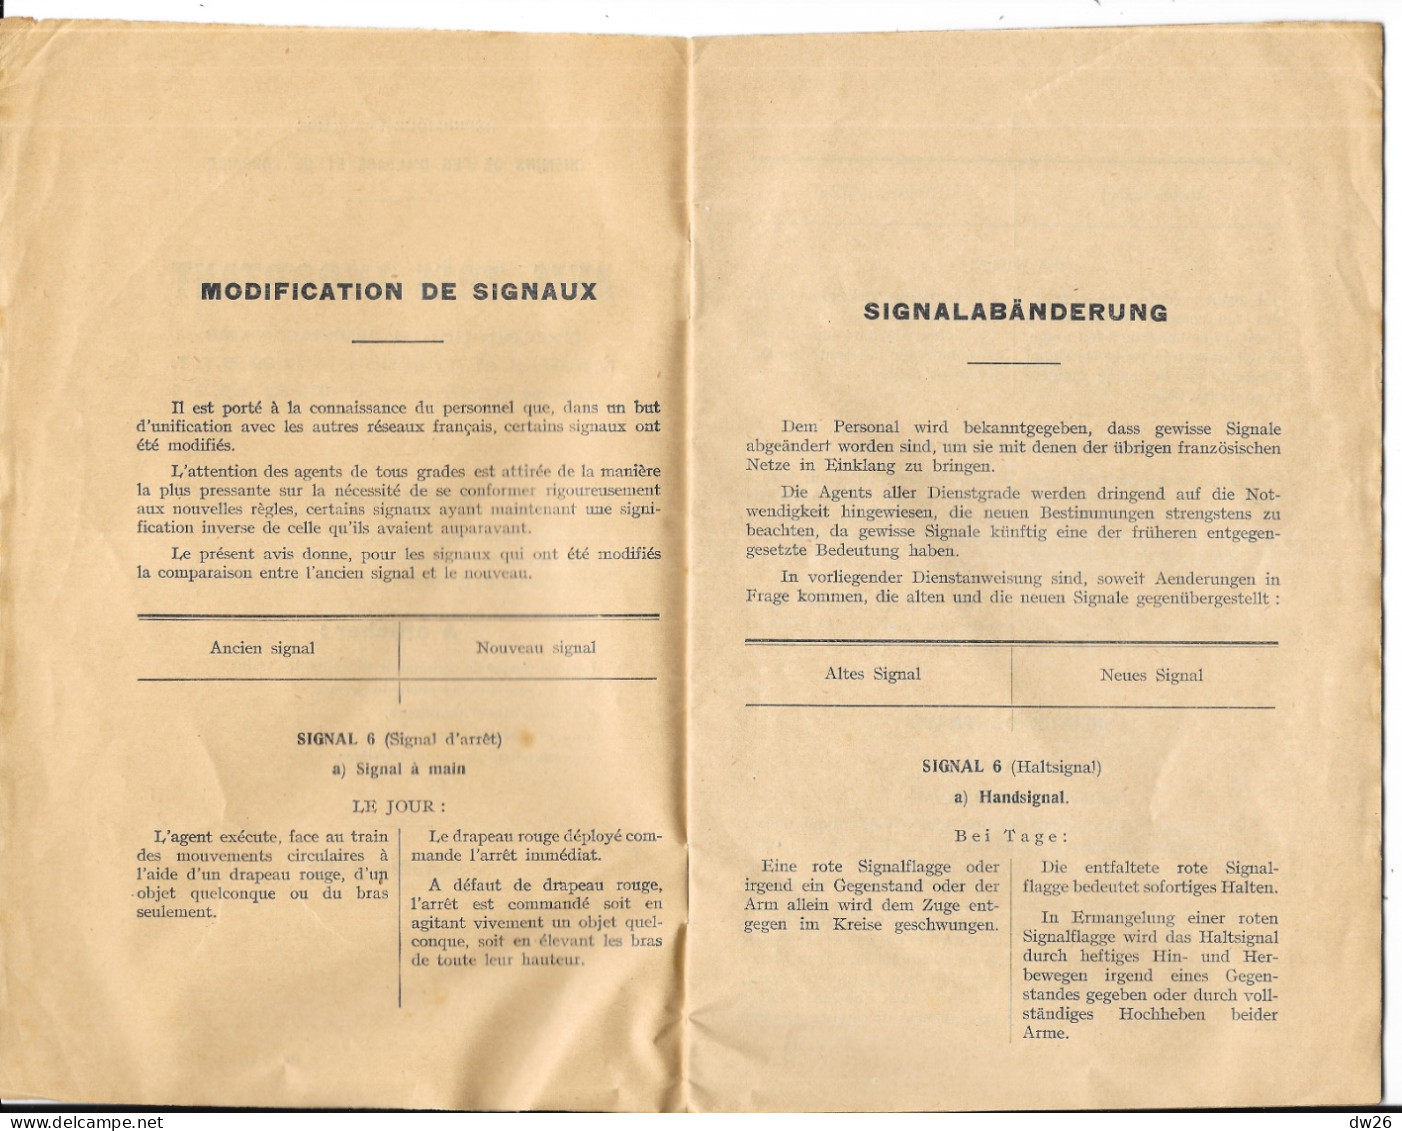 Chemins De Fer D'Alsace Et De Lorraine - Livret: Avis Très Important à Distribuer Aux Agents Cheminaux 1932 - Spoorweg